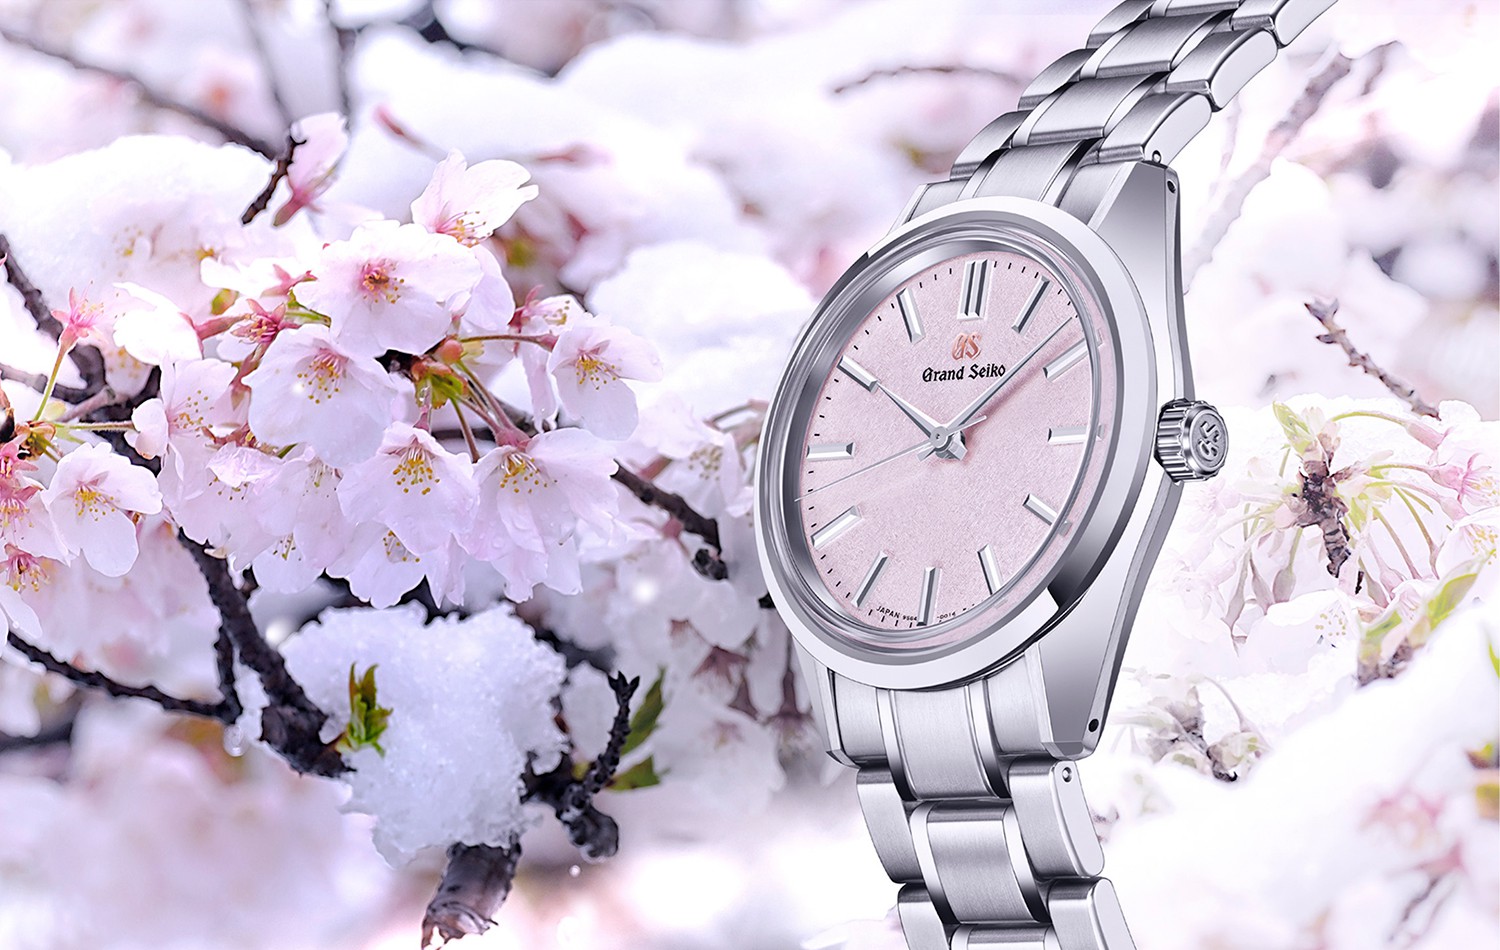 Sakura, spring and snow